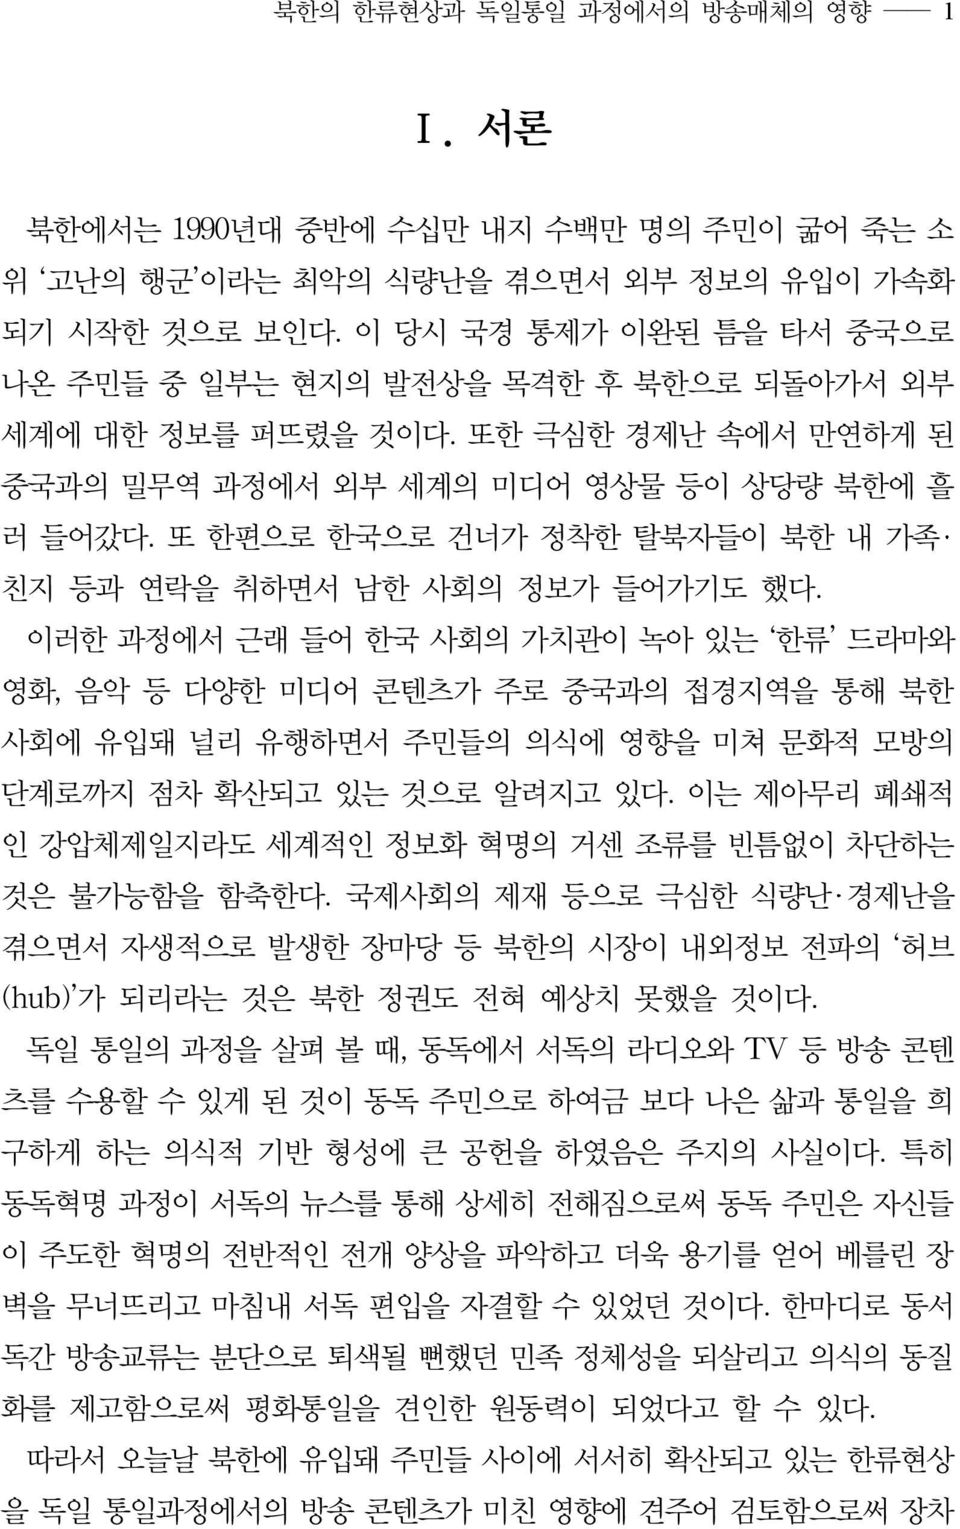 또 한편으로 한국으로 건너가 정착한 탈북자들이 북한 내 가족 친지 등과 연락을 취하면서 남한 사회의 정보가 들어가기도 했다.